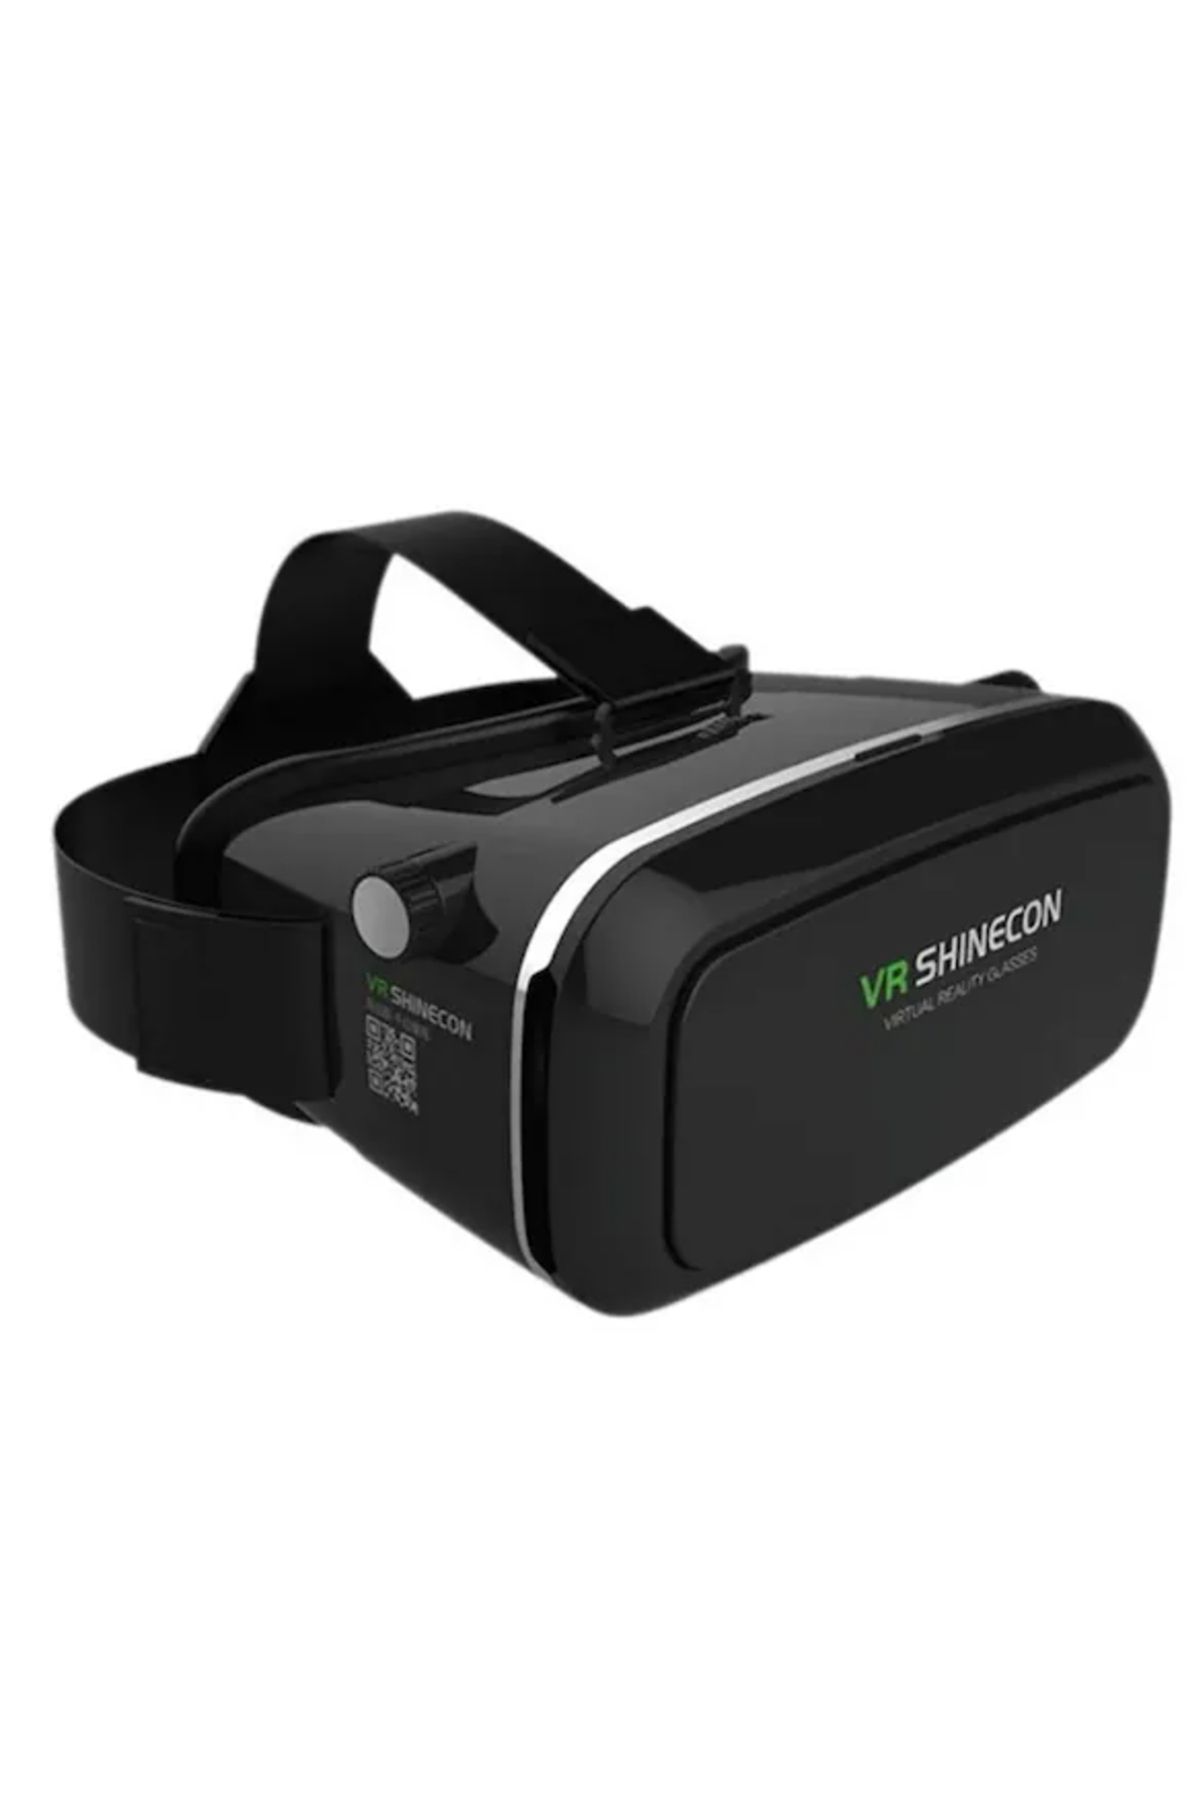 Microcase VR Plus 3D Sanal Gerçeklik Gözlüğü -  AL4150